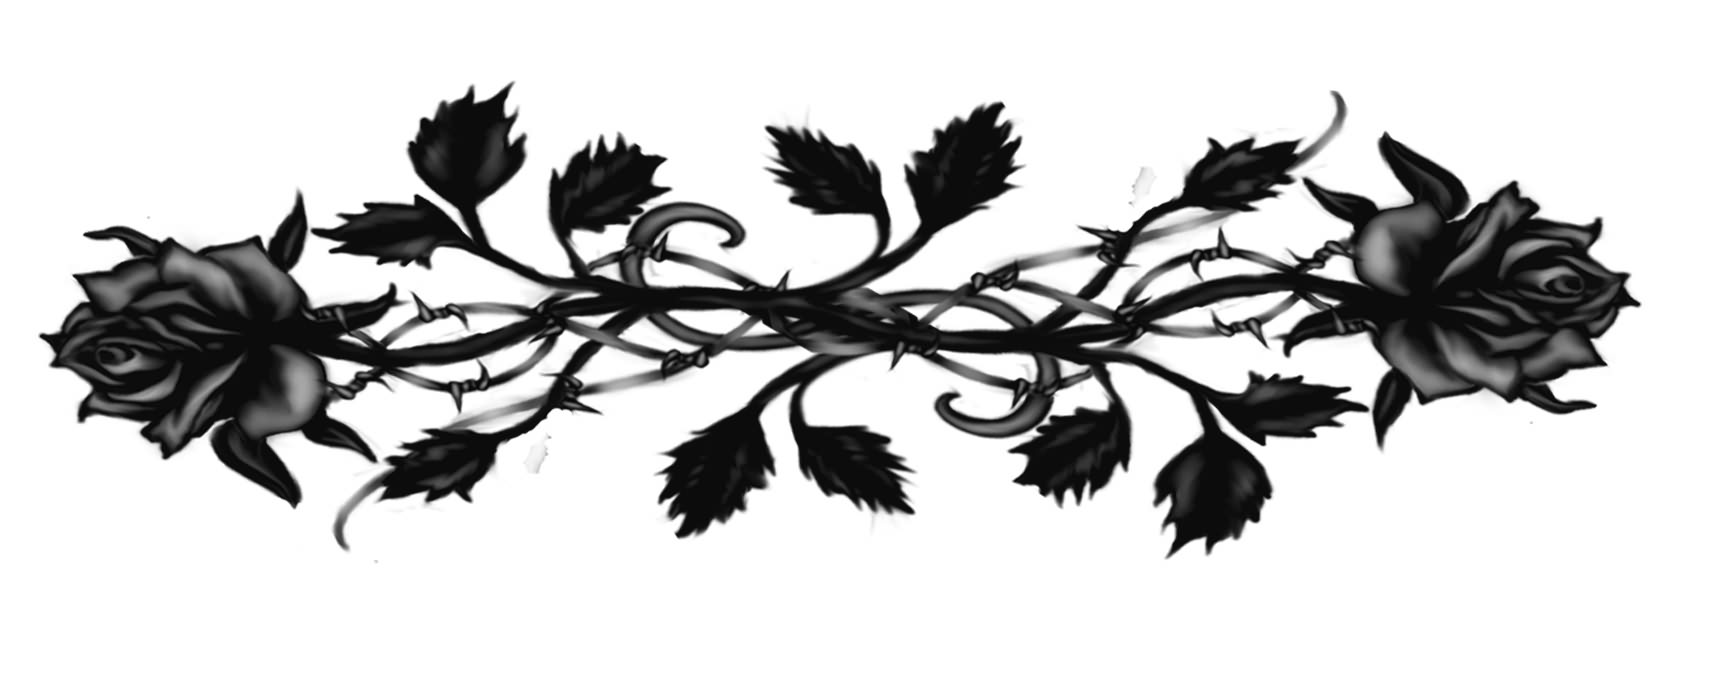 Black Ink Gothic Roses Tattoo Design